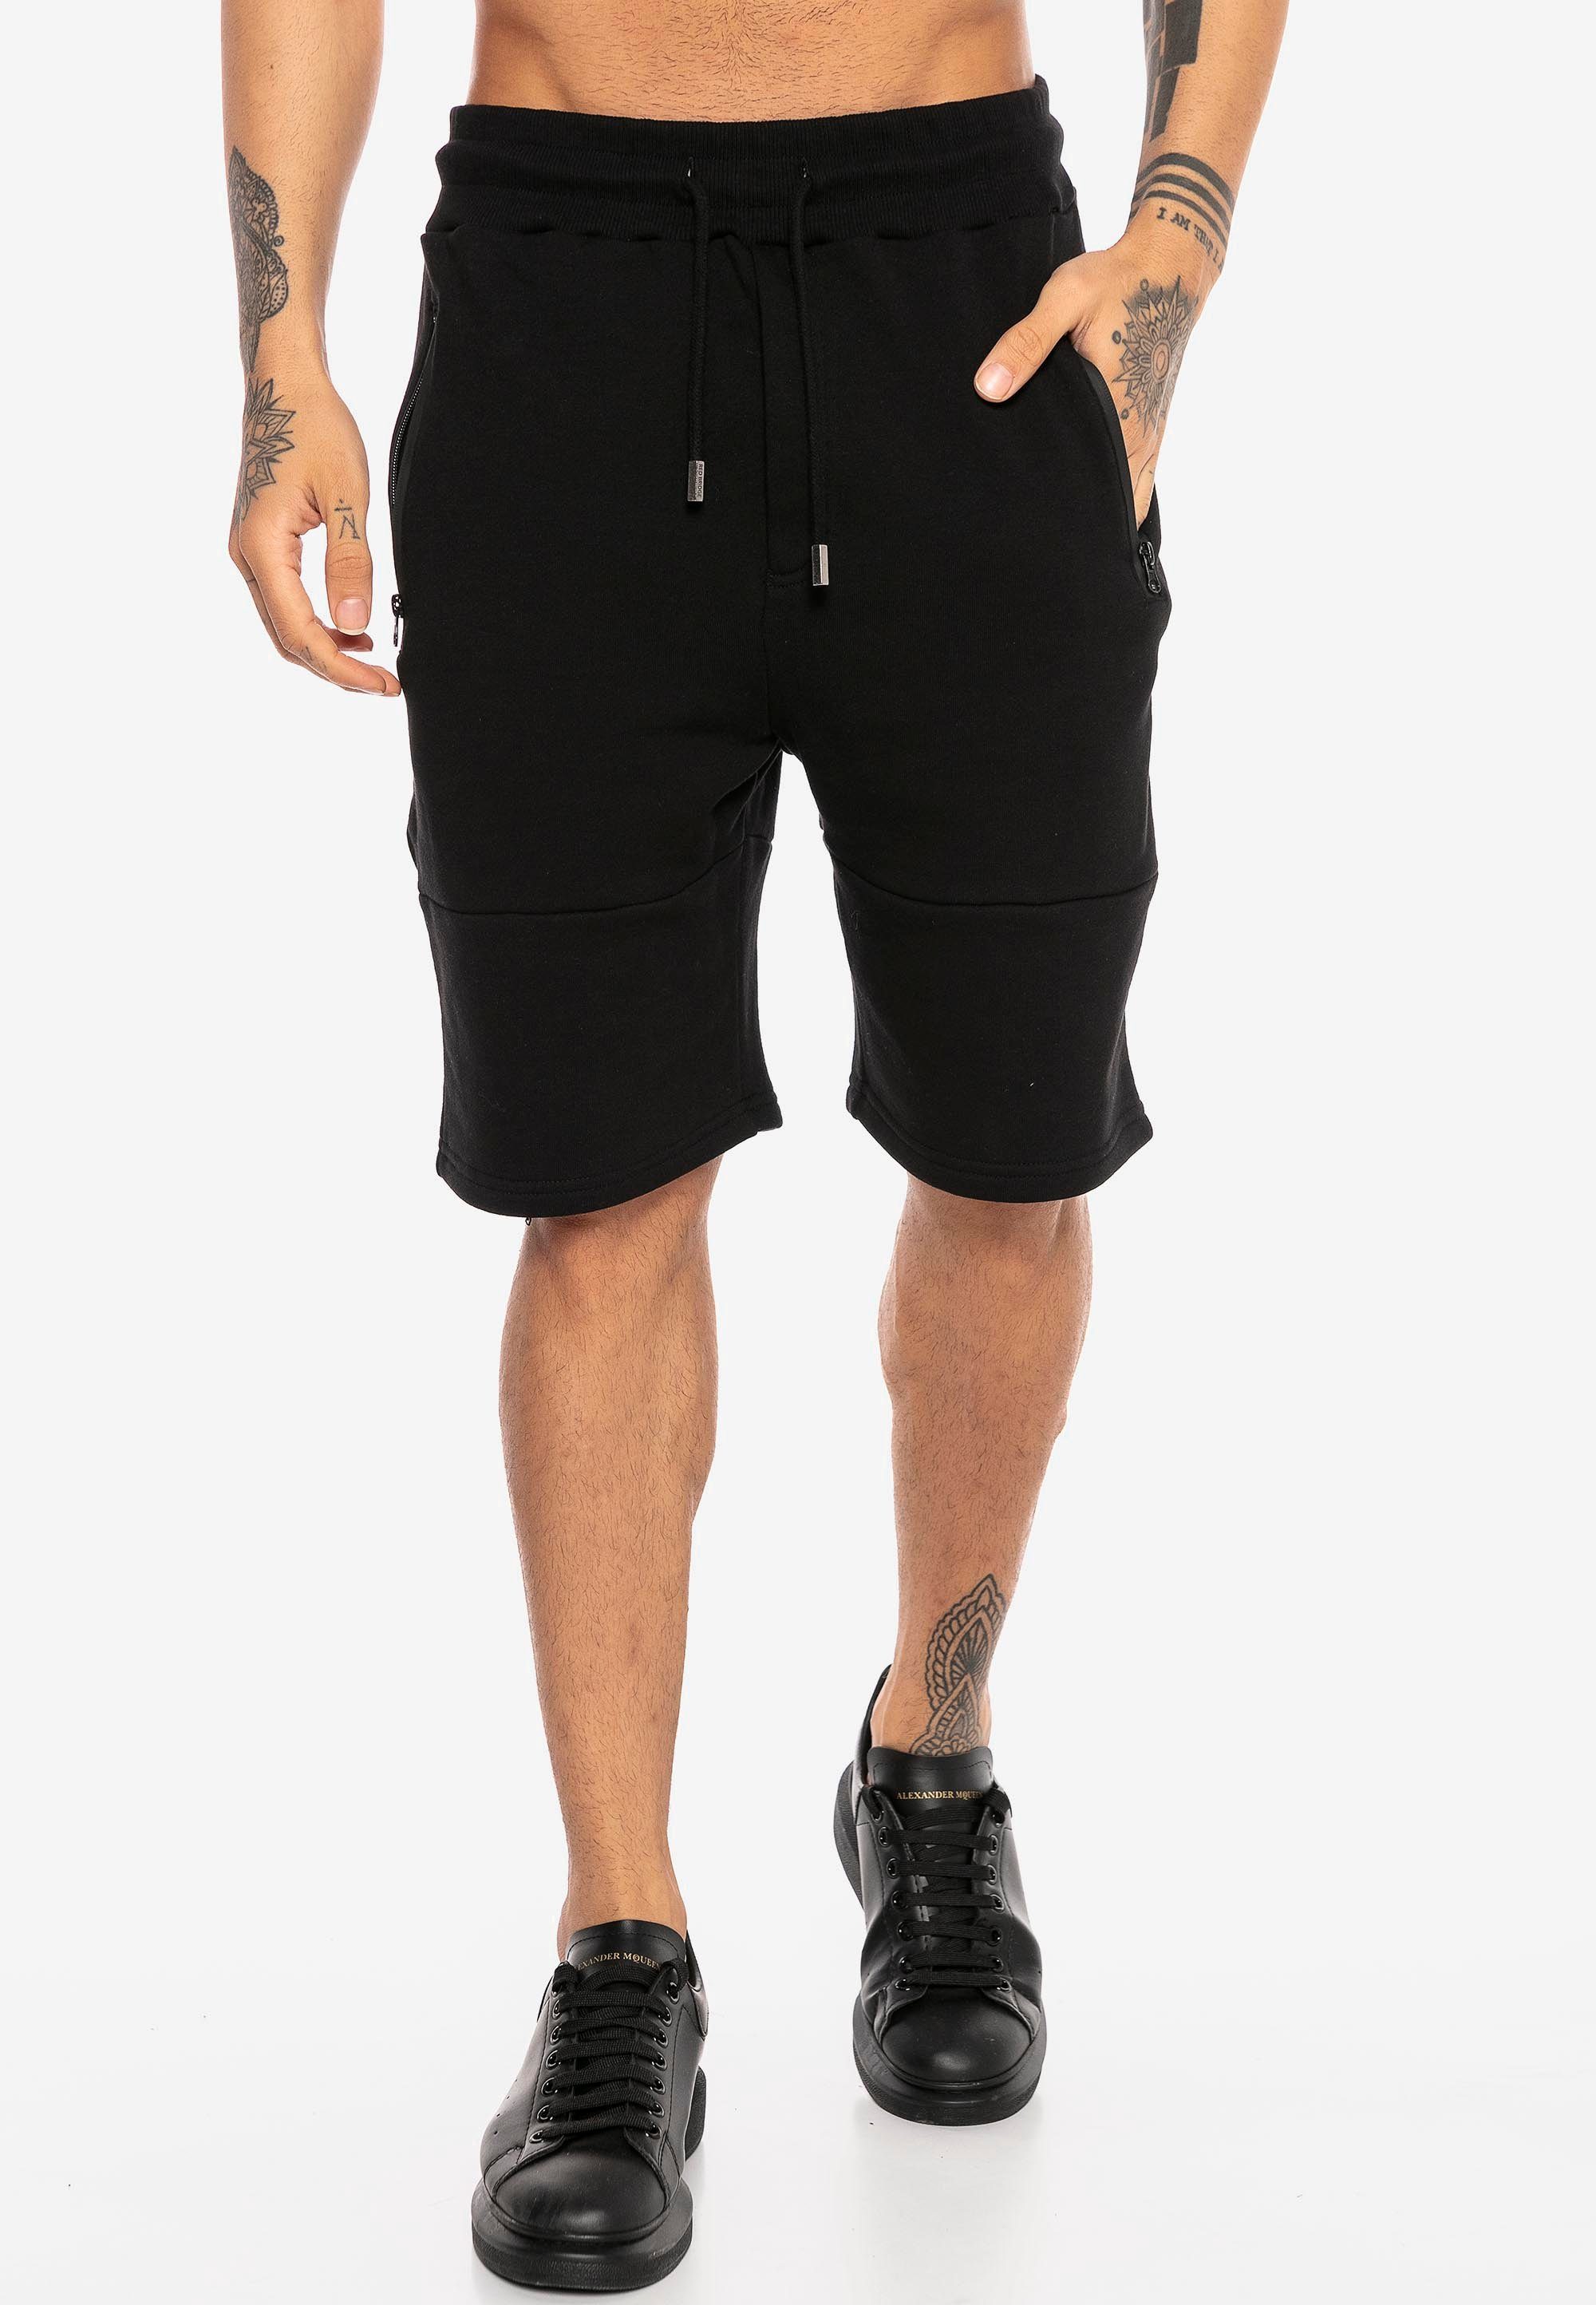 RedBridge Shorts in modischem Design schwarz